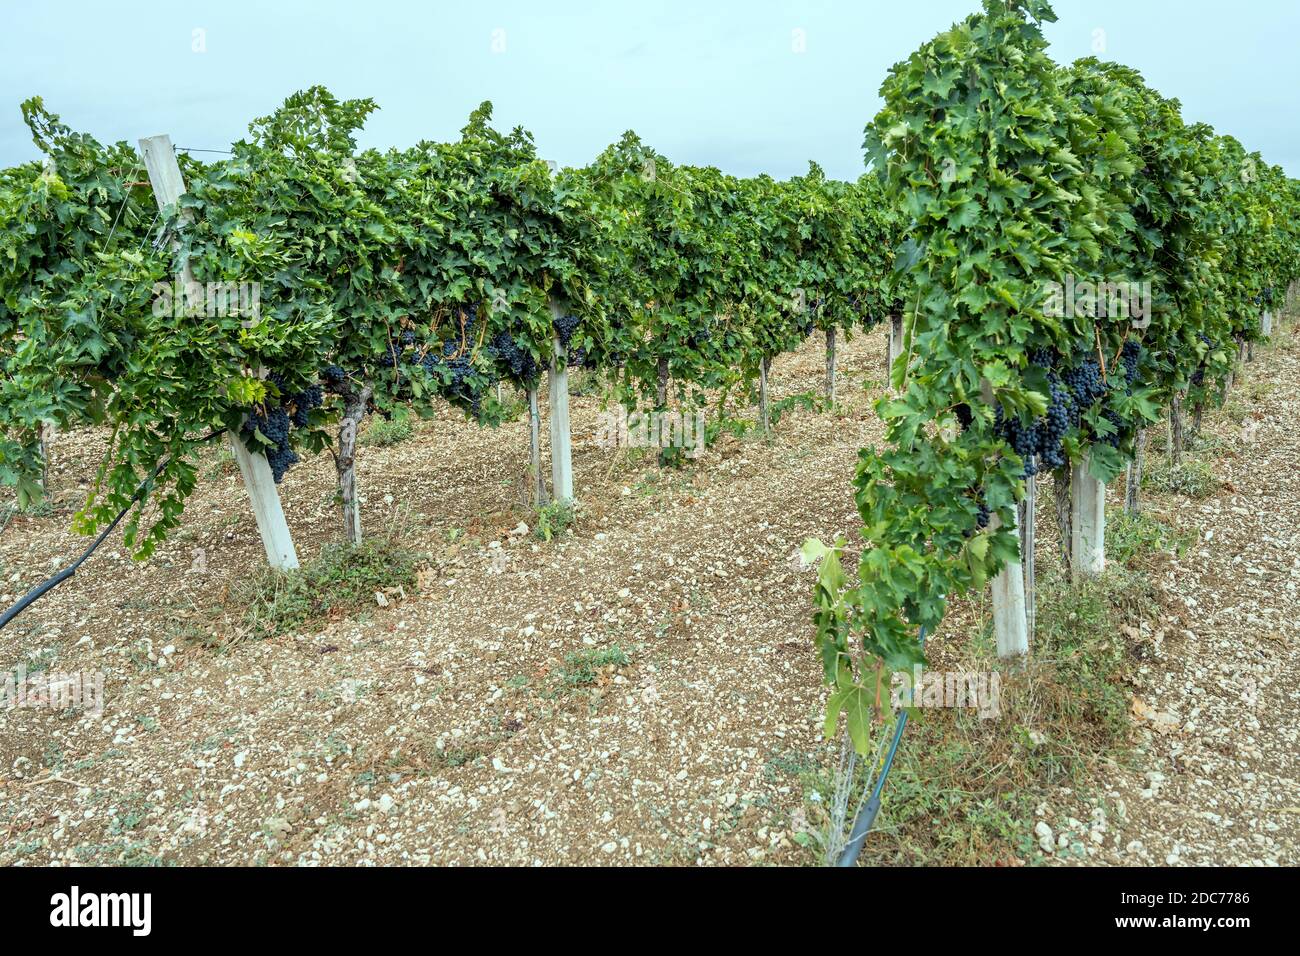 Filari di vite con una miriade di grappoli di uva nera maturi in vigna nei pressi di Raiano, l'Aquila, Abruzzo, Italia Foto Stock